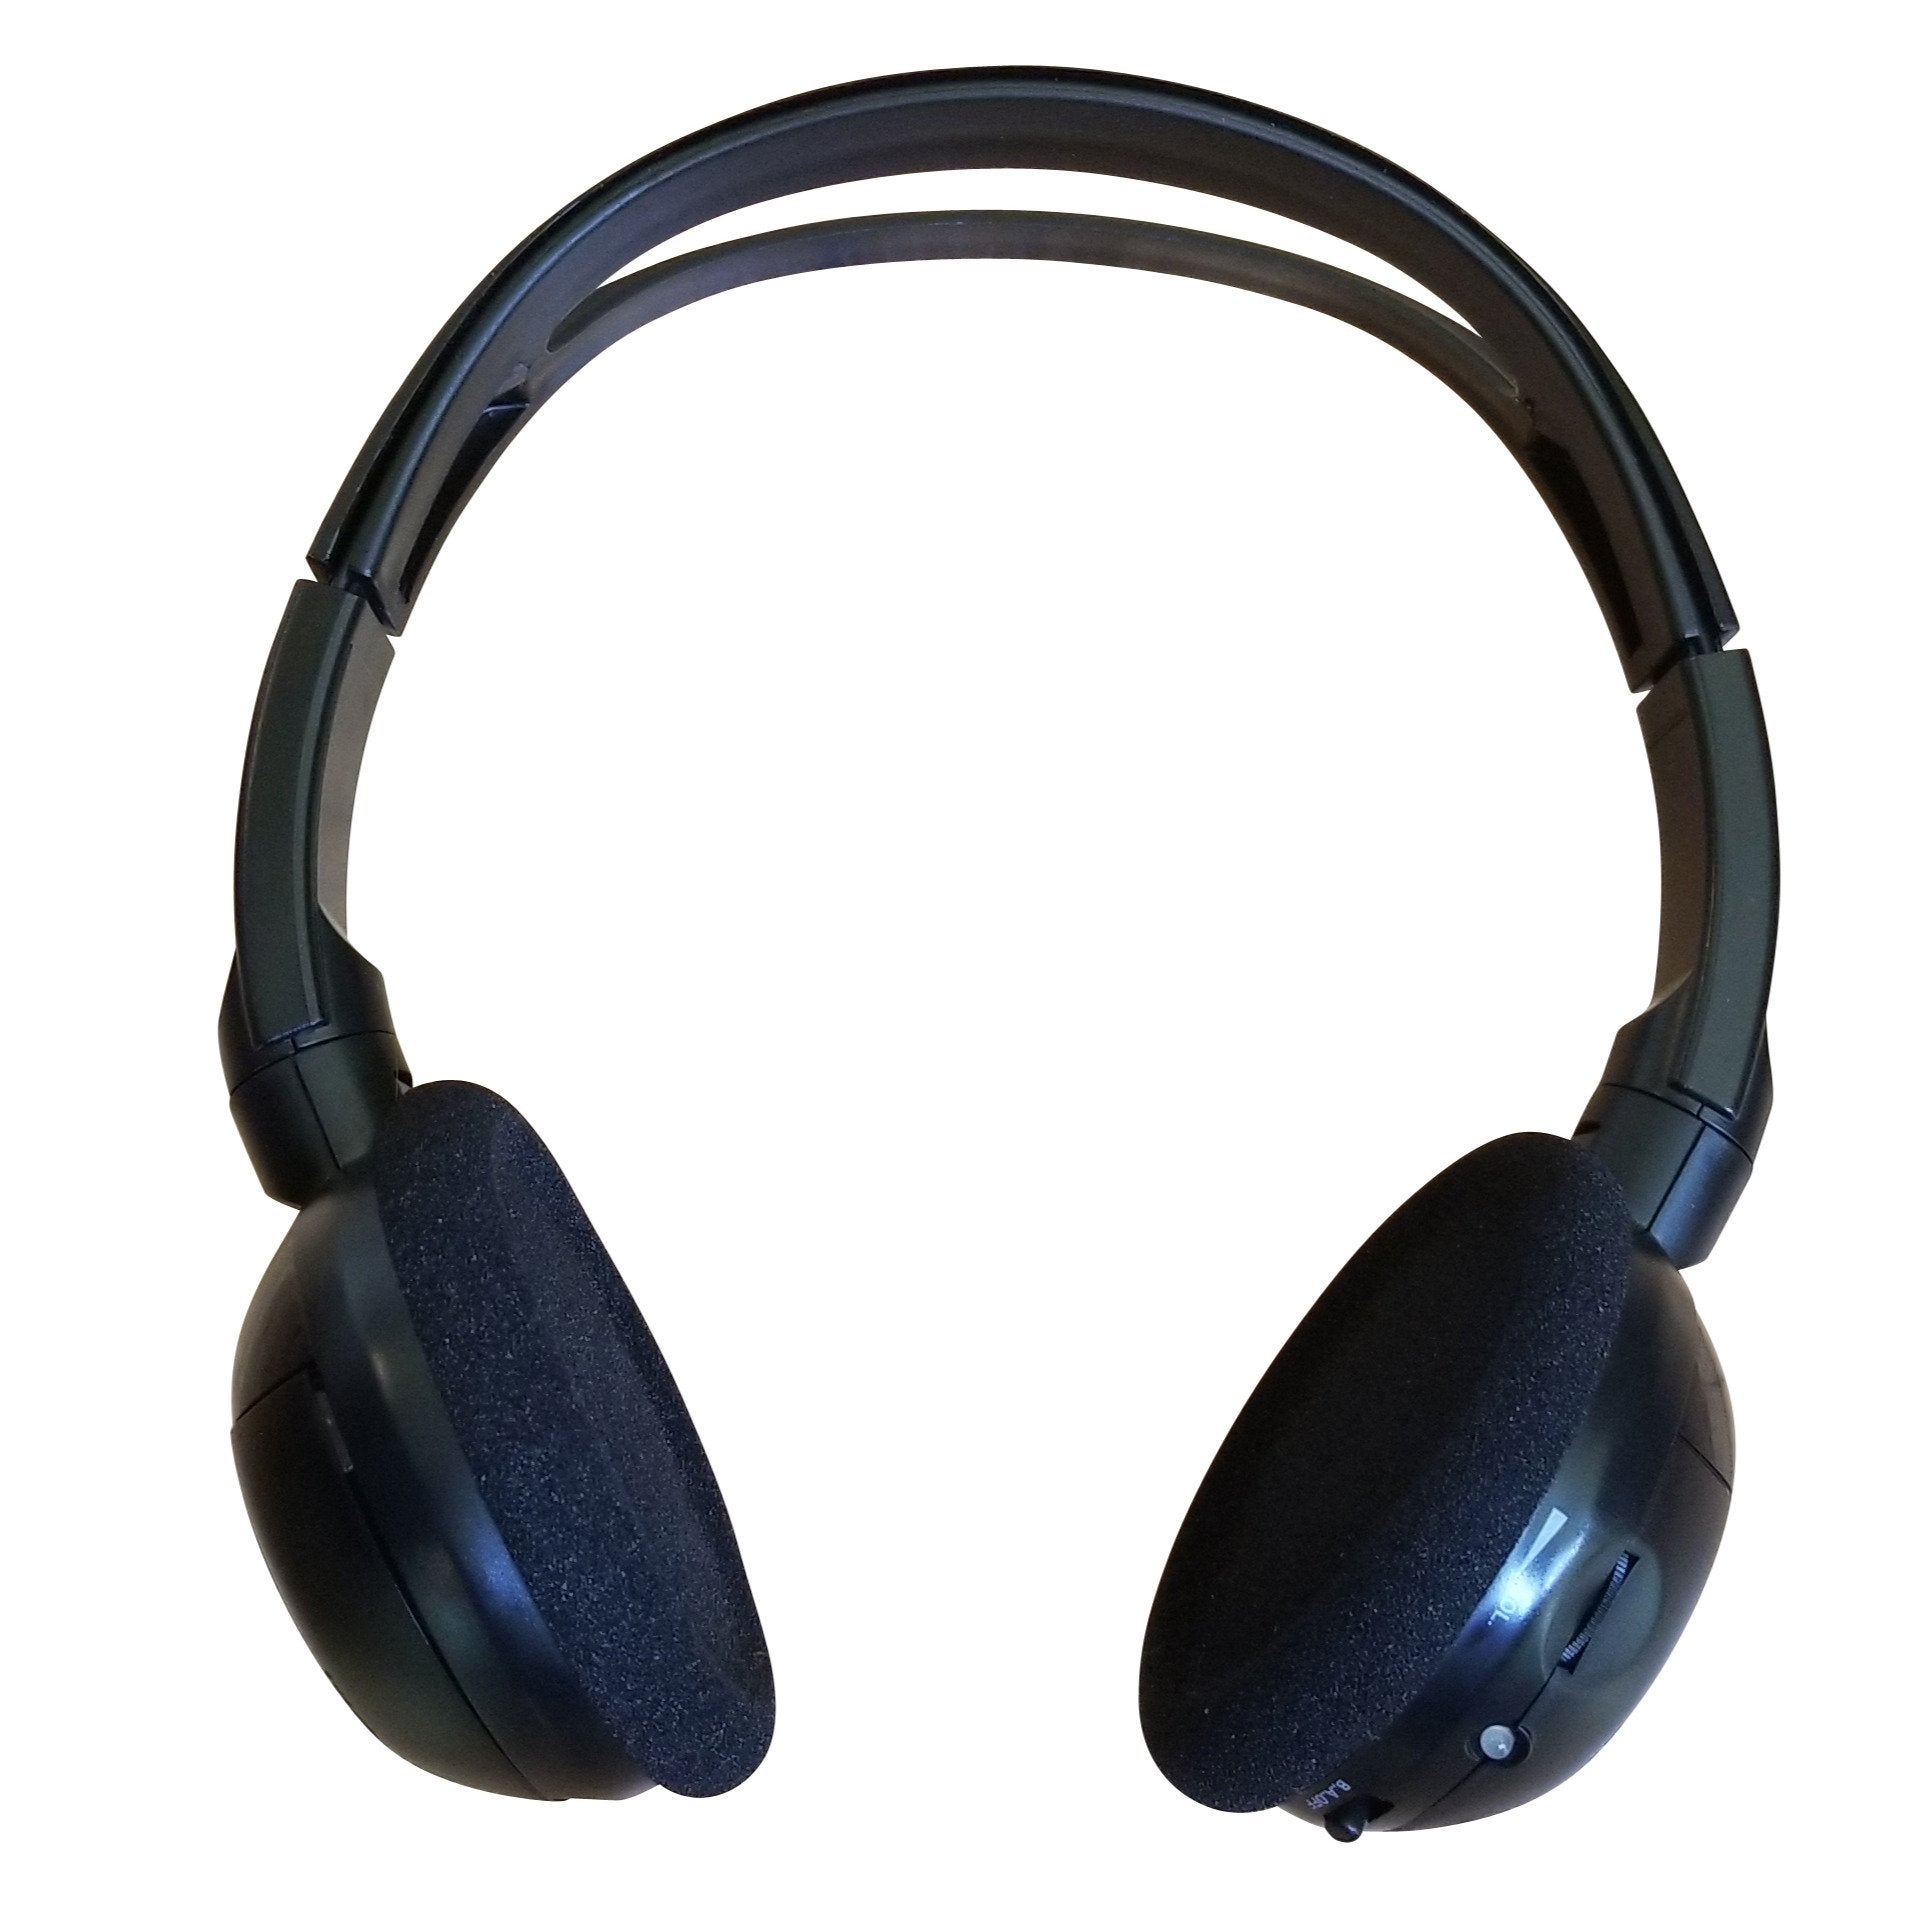 2020 GMC Savana Wireless DVD Headphone